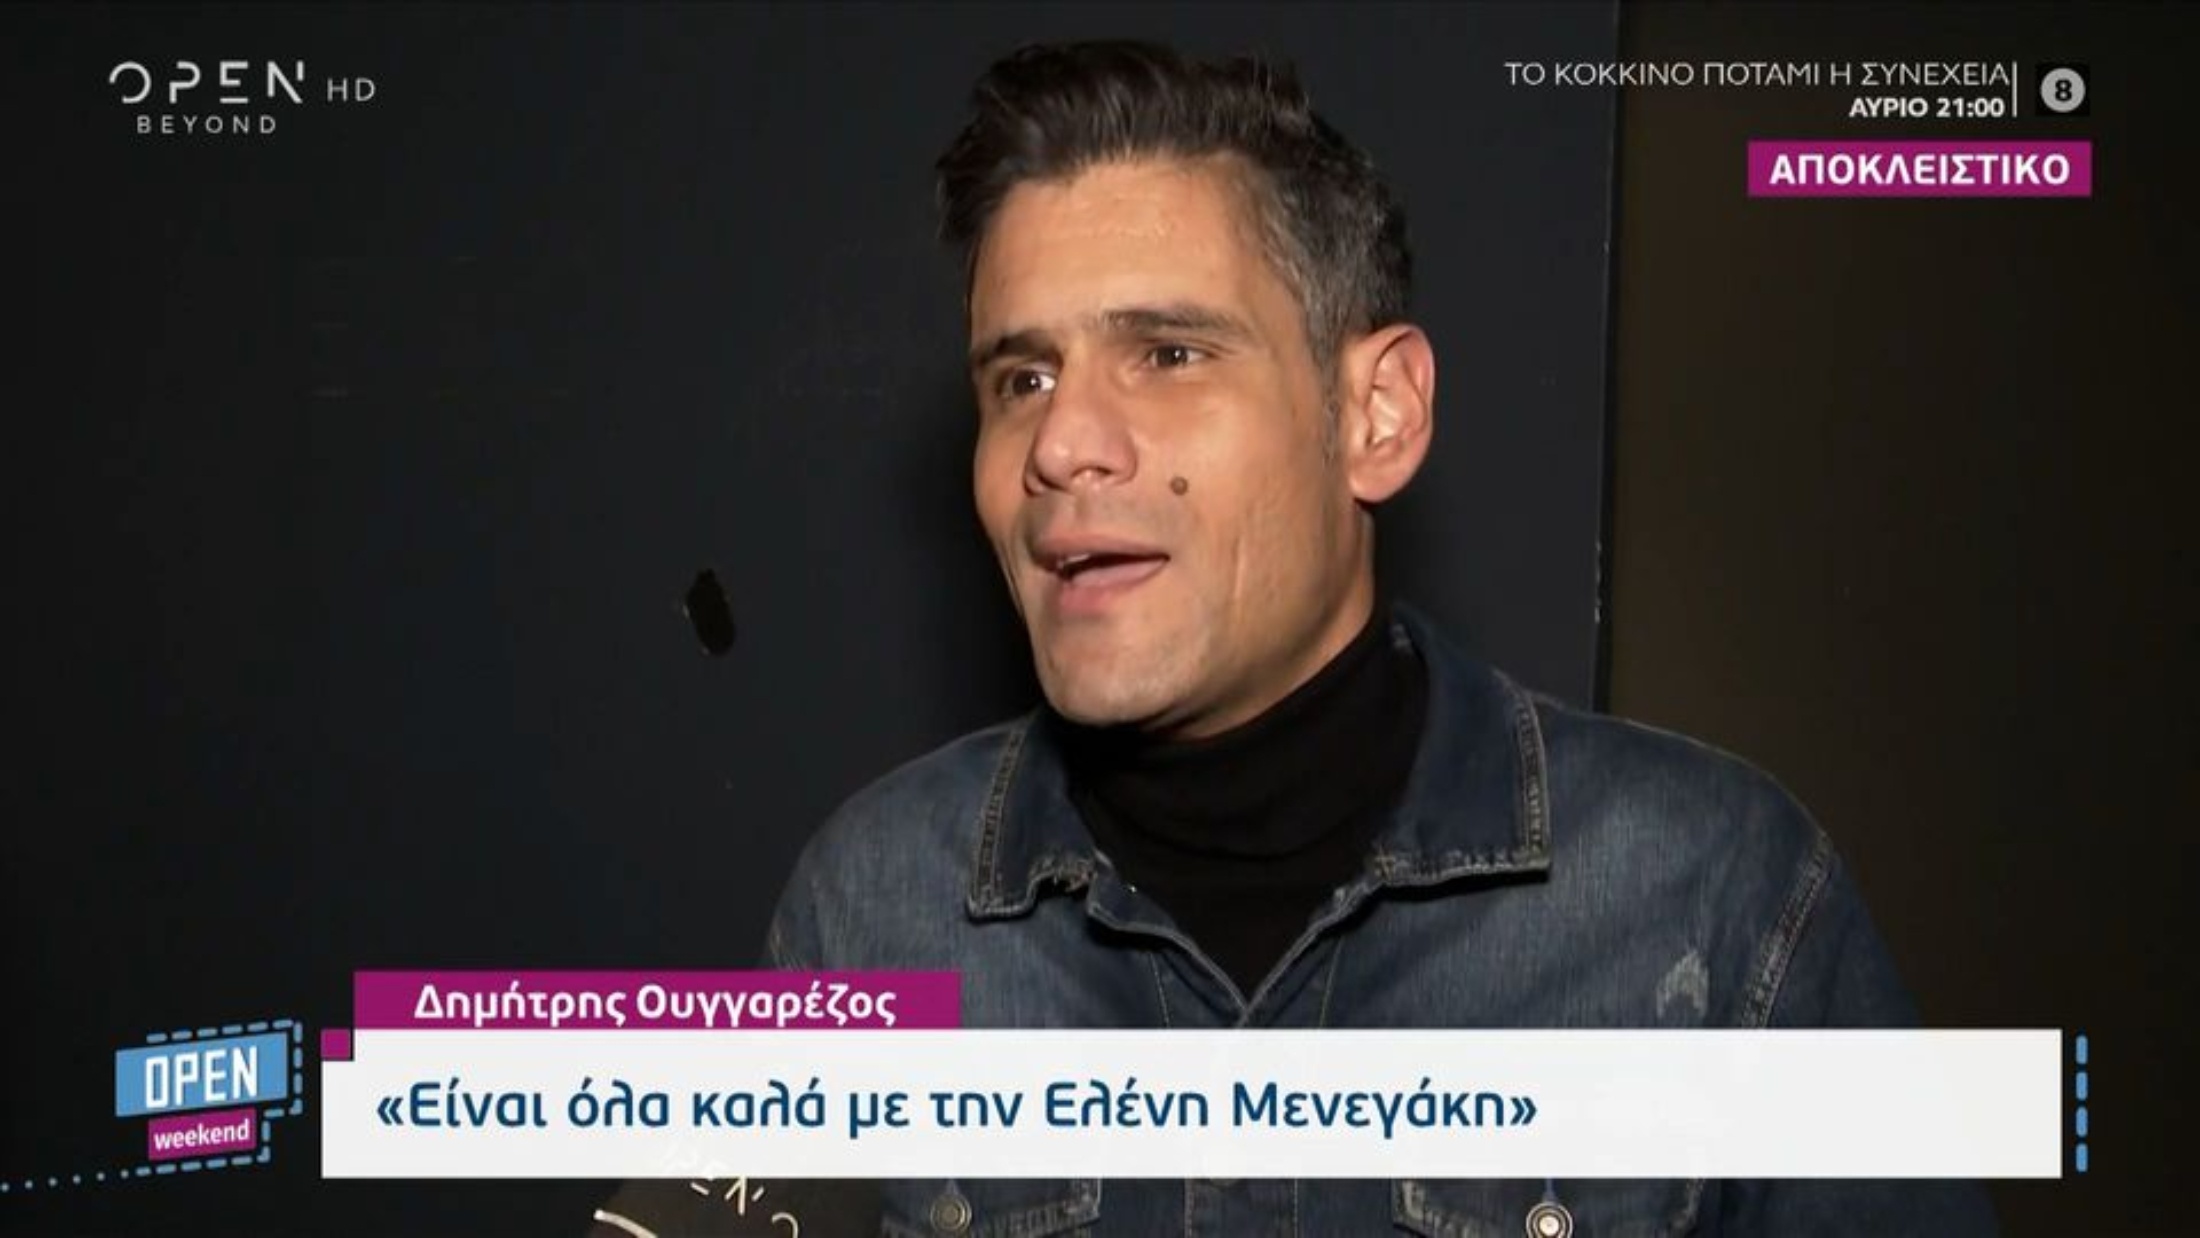 Δημήτρης Ουγγαρέζος: «Θέλω να είμαι στην παρέα της Ελένης -Είναι όλα καλά» (VIDEO)